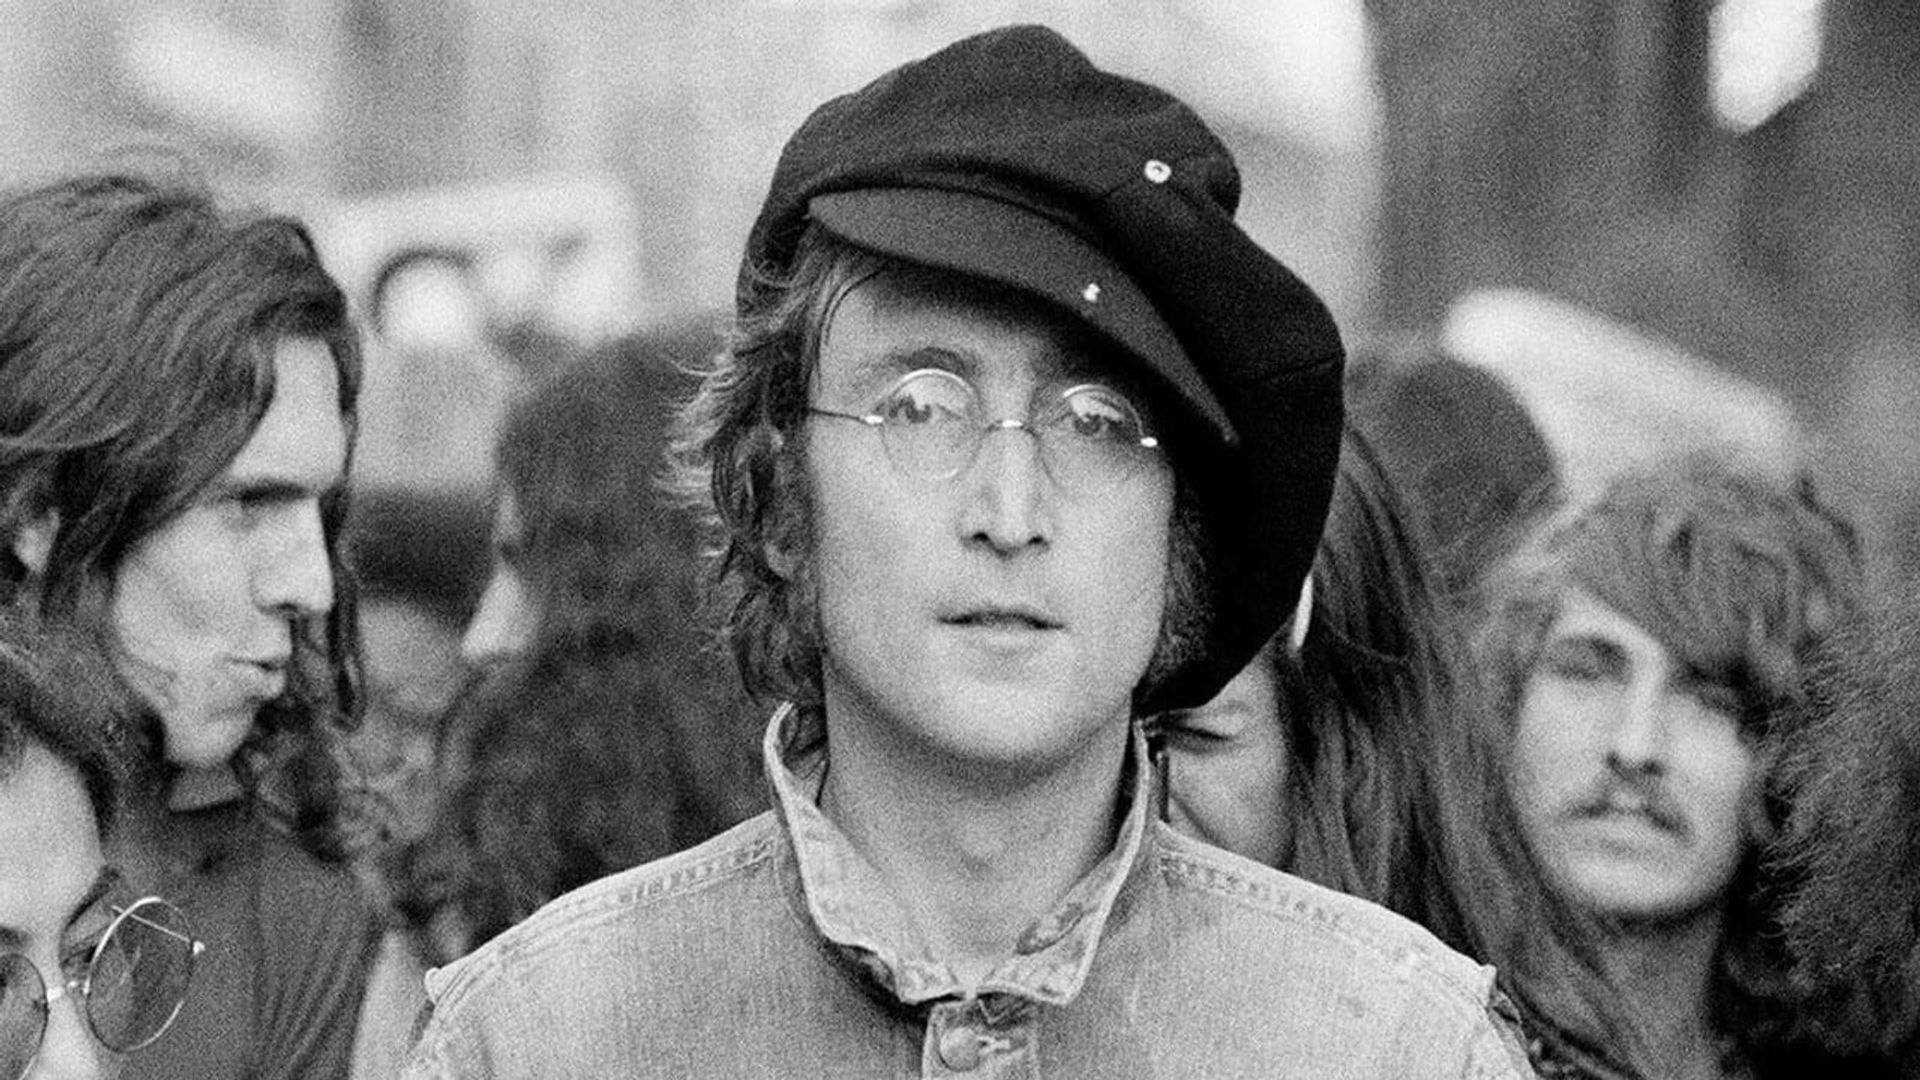 Imagine: John Lennon 75th Birthday Concert background